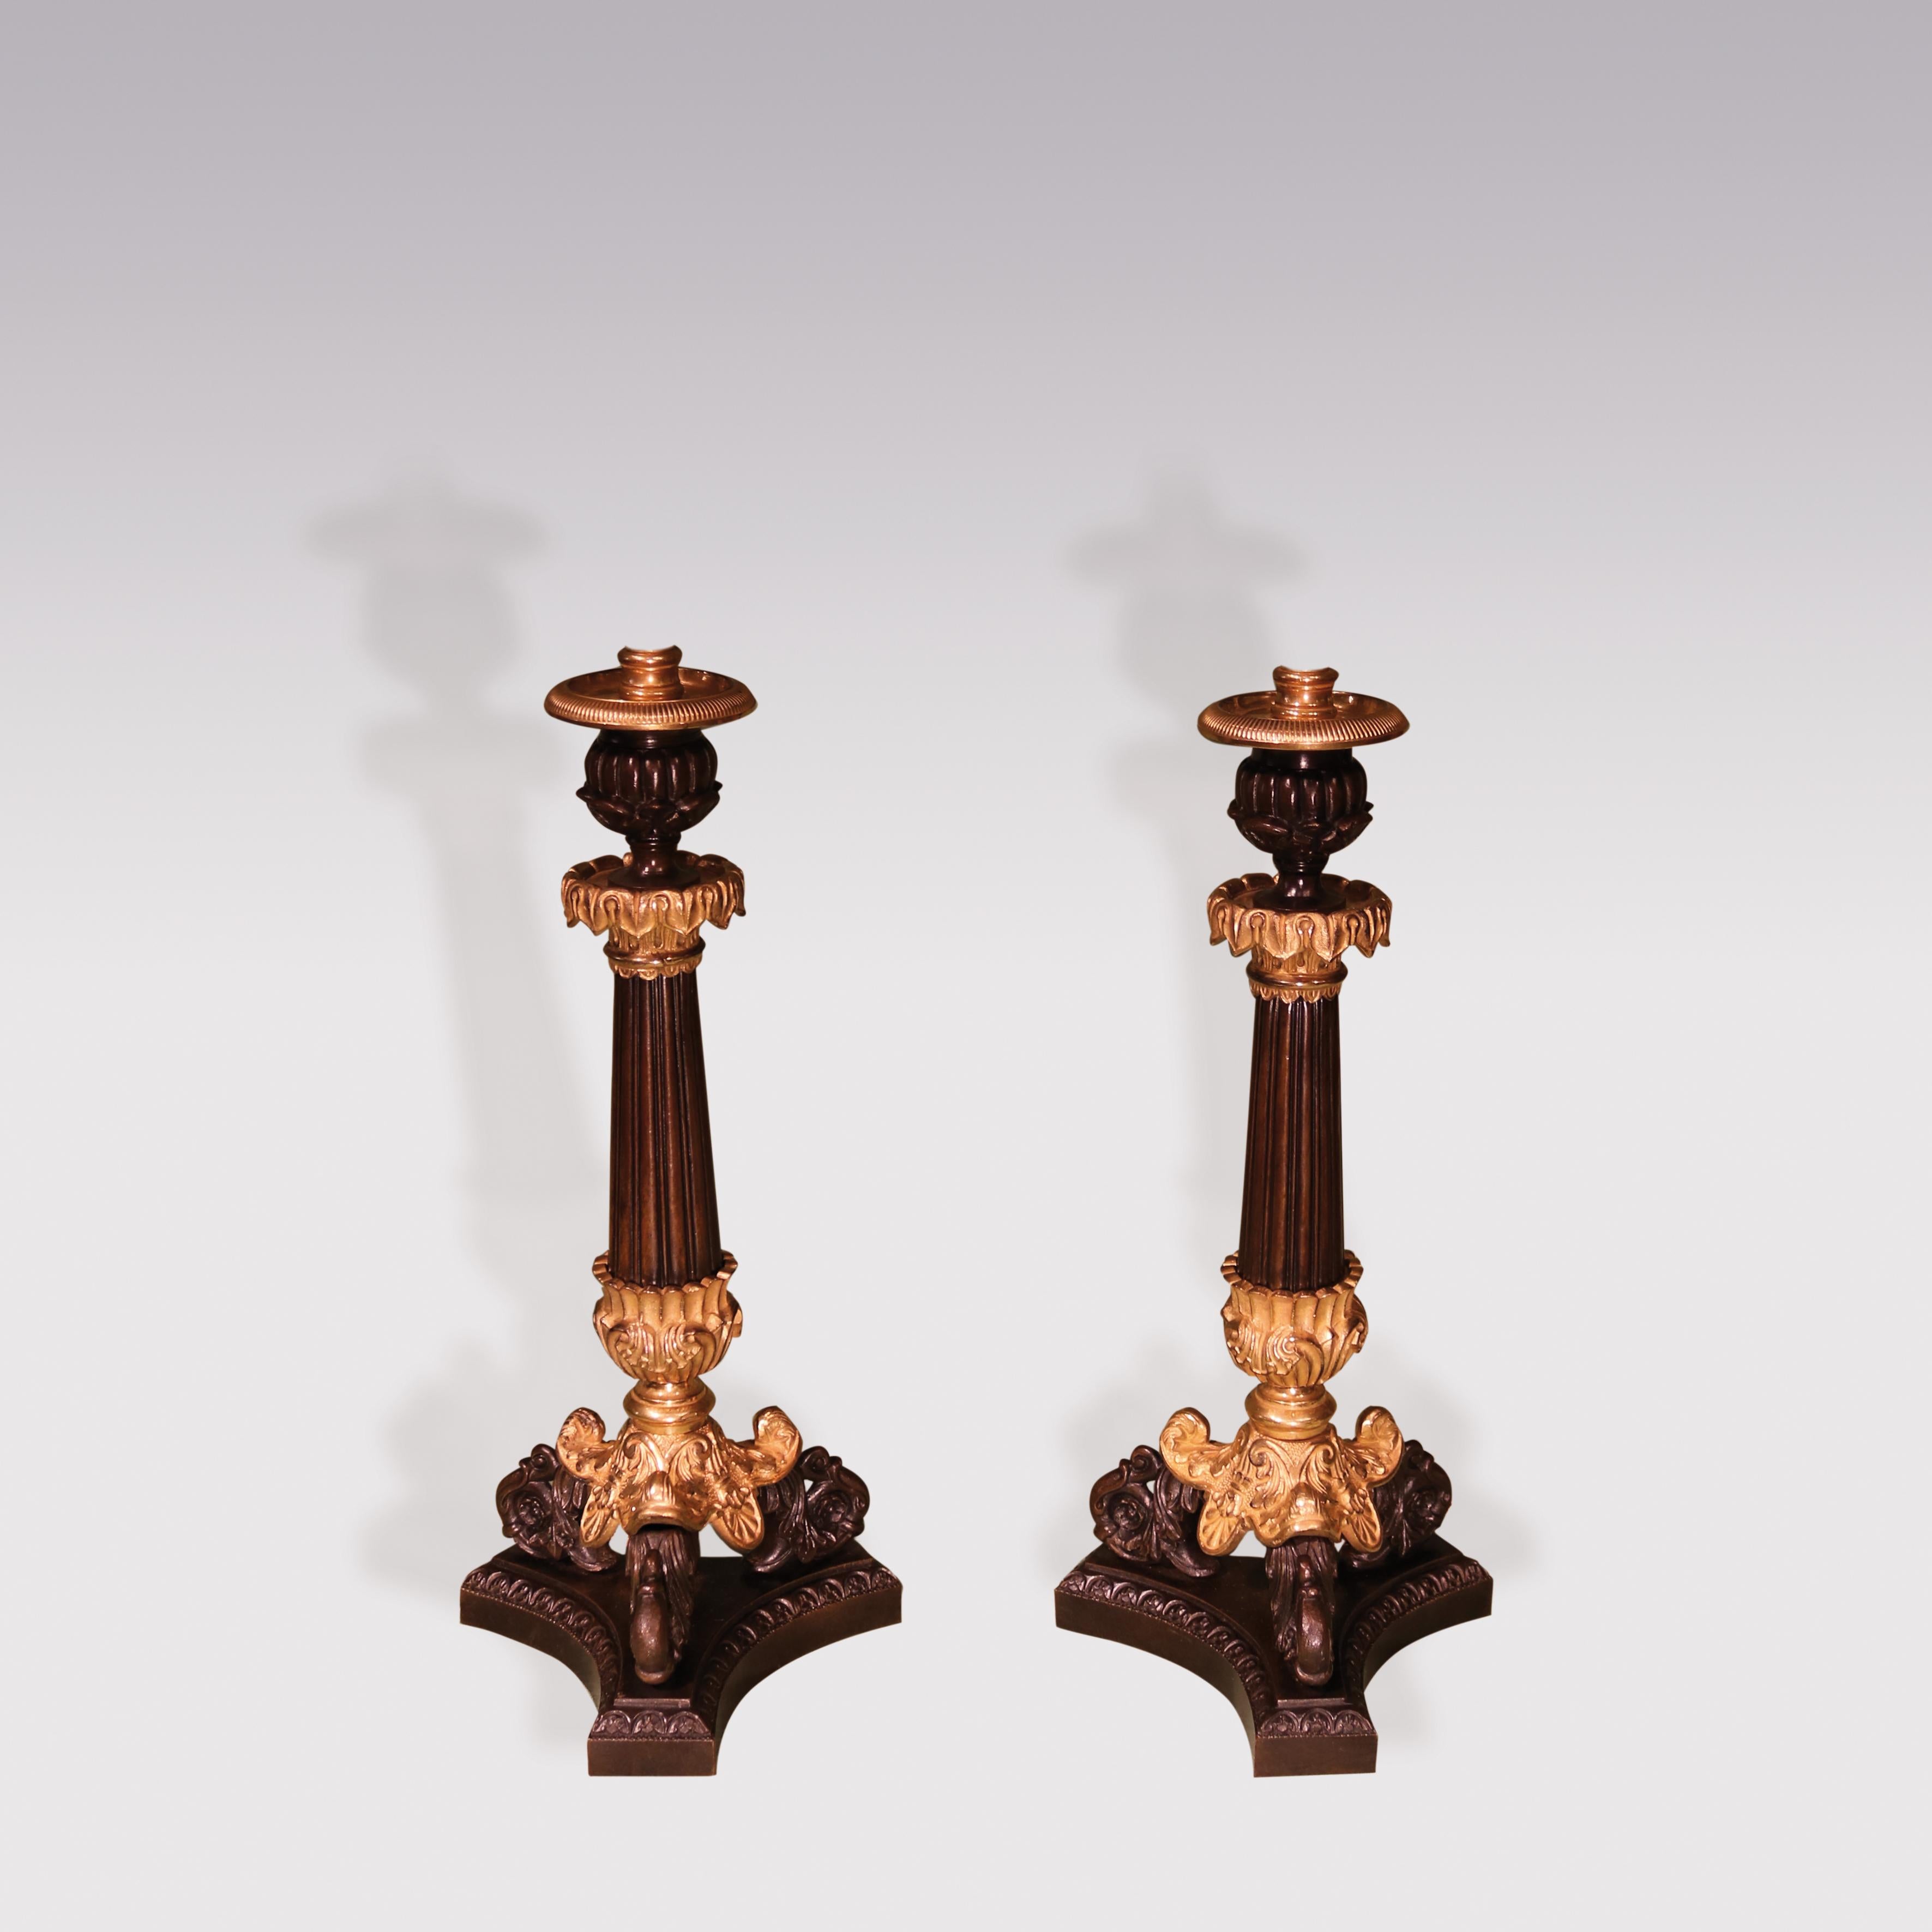 Ein Paar Bronze- und Ormolu-Kerzenhalter aus dem frühen 19. Jahrhundert mit blattgeschmückten Tüllen über geriffelten, sich verjüngenden Stielen, die auf dreiförmigen, akanthusgeschwungenen Füßen stehen und auf einem konkaven Sockel enden. (Jetzt